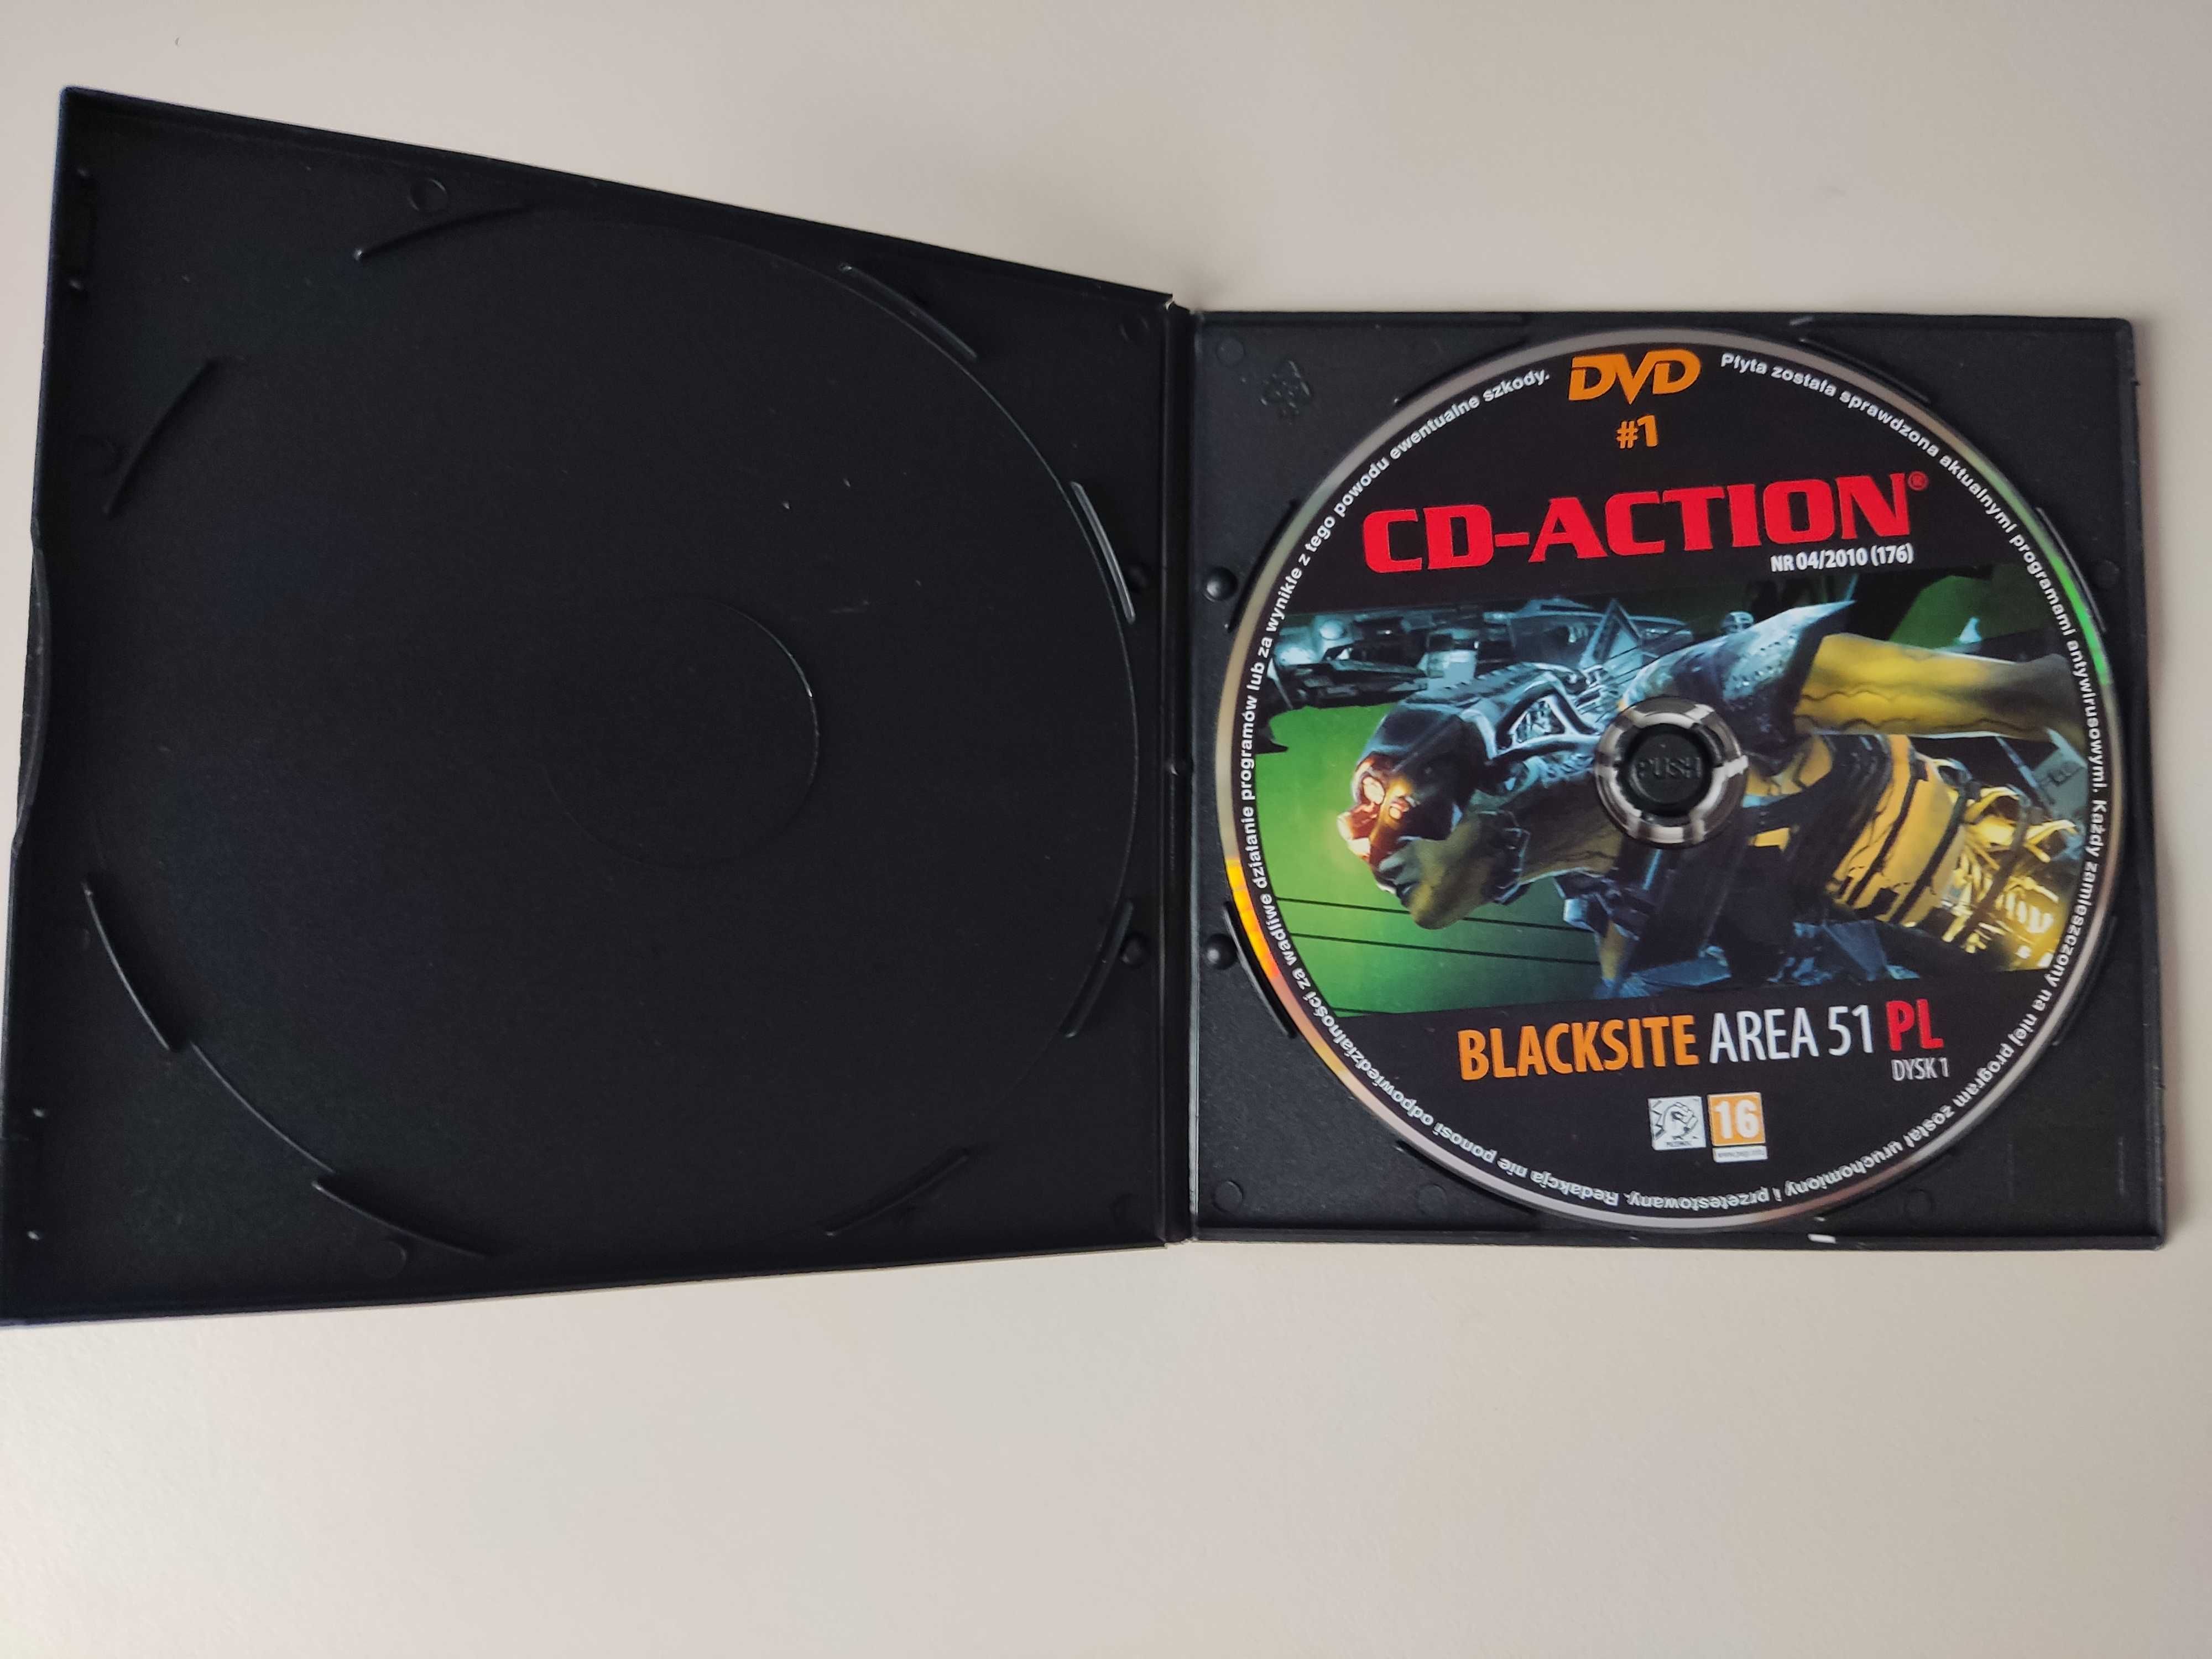 Blacksite Area 51 - DVD # 1